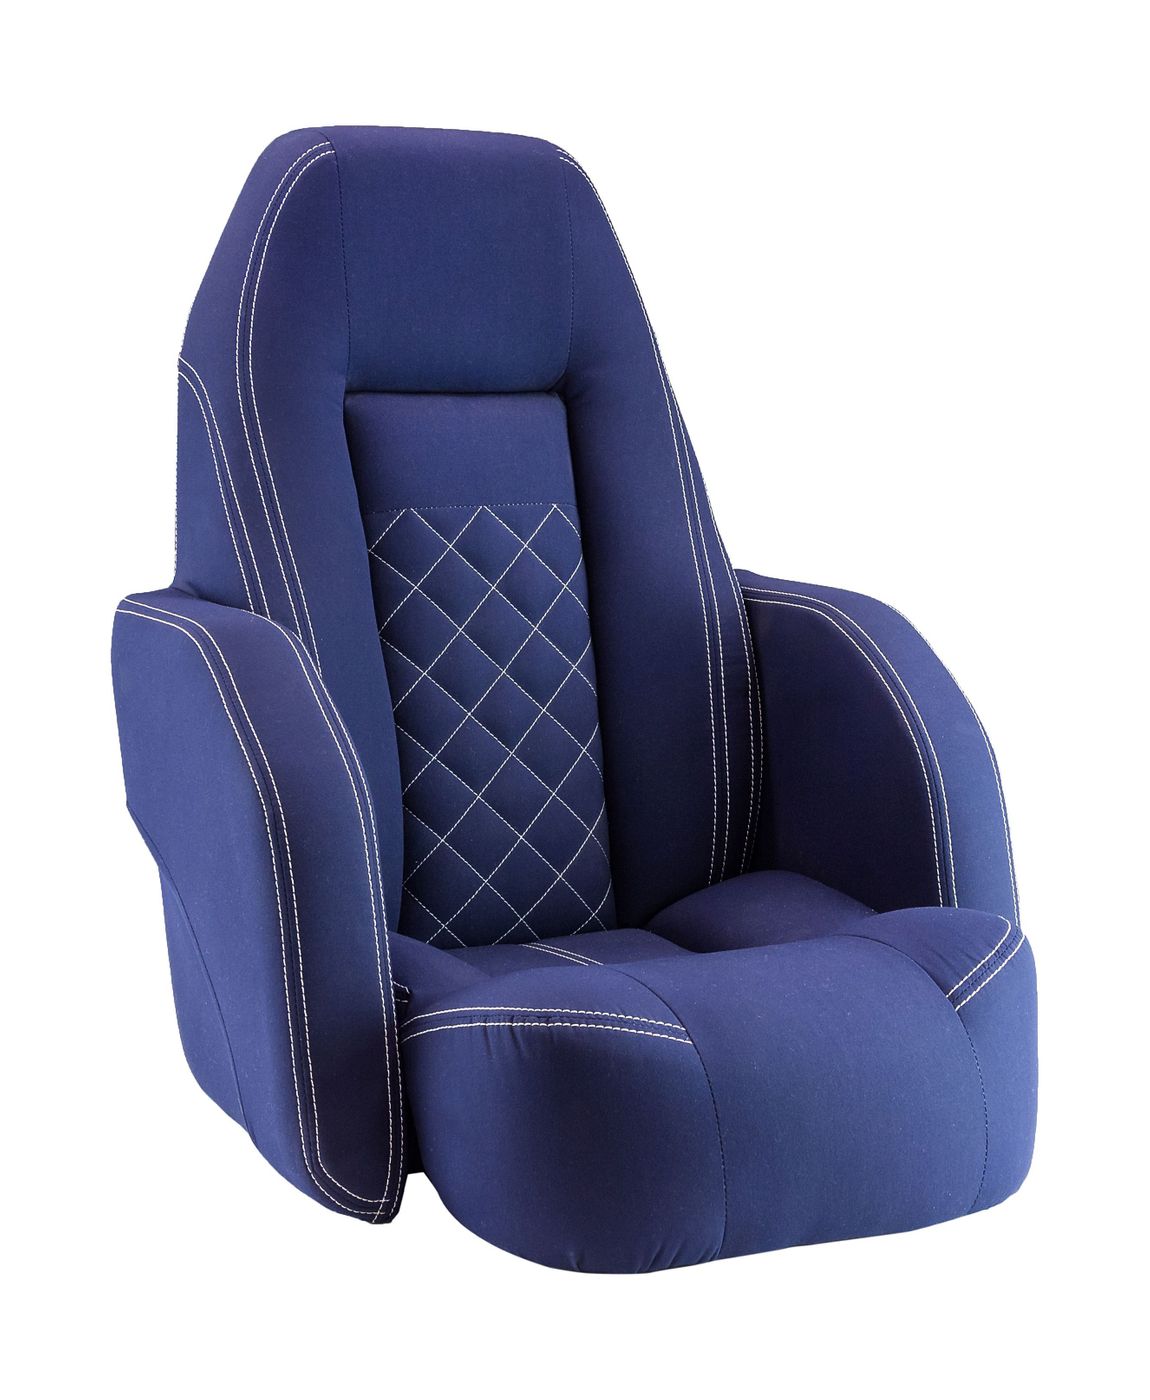 Кресло ROYALITA мягкое, подставка, обивка ткань Markilux темно-синяя 570000395 кресло mealux match y 528 sb grey base основание серое обивка синяя однотонная